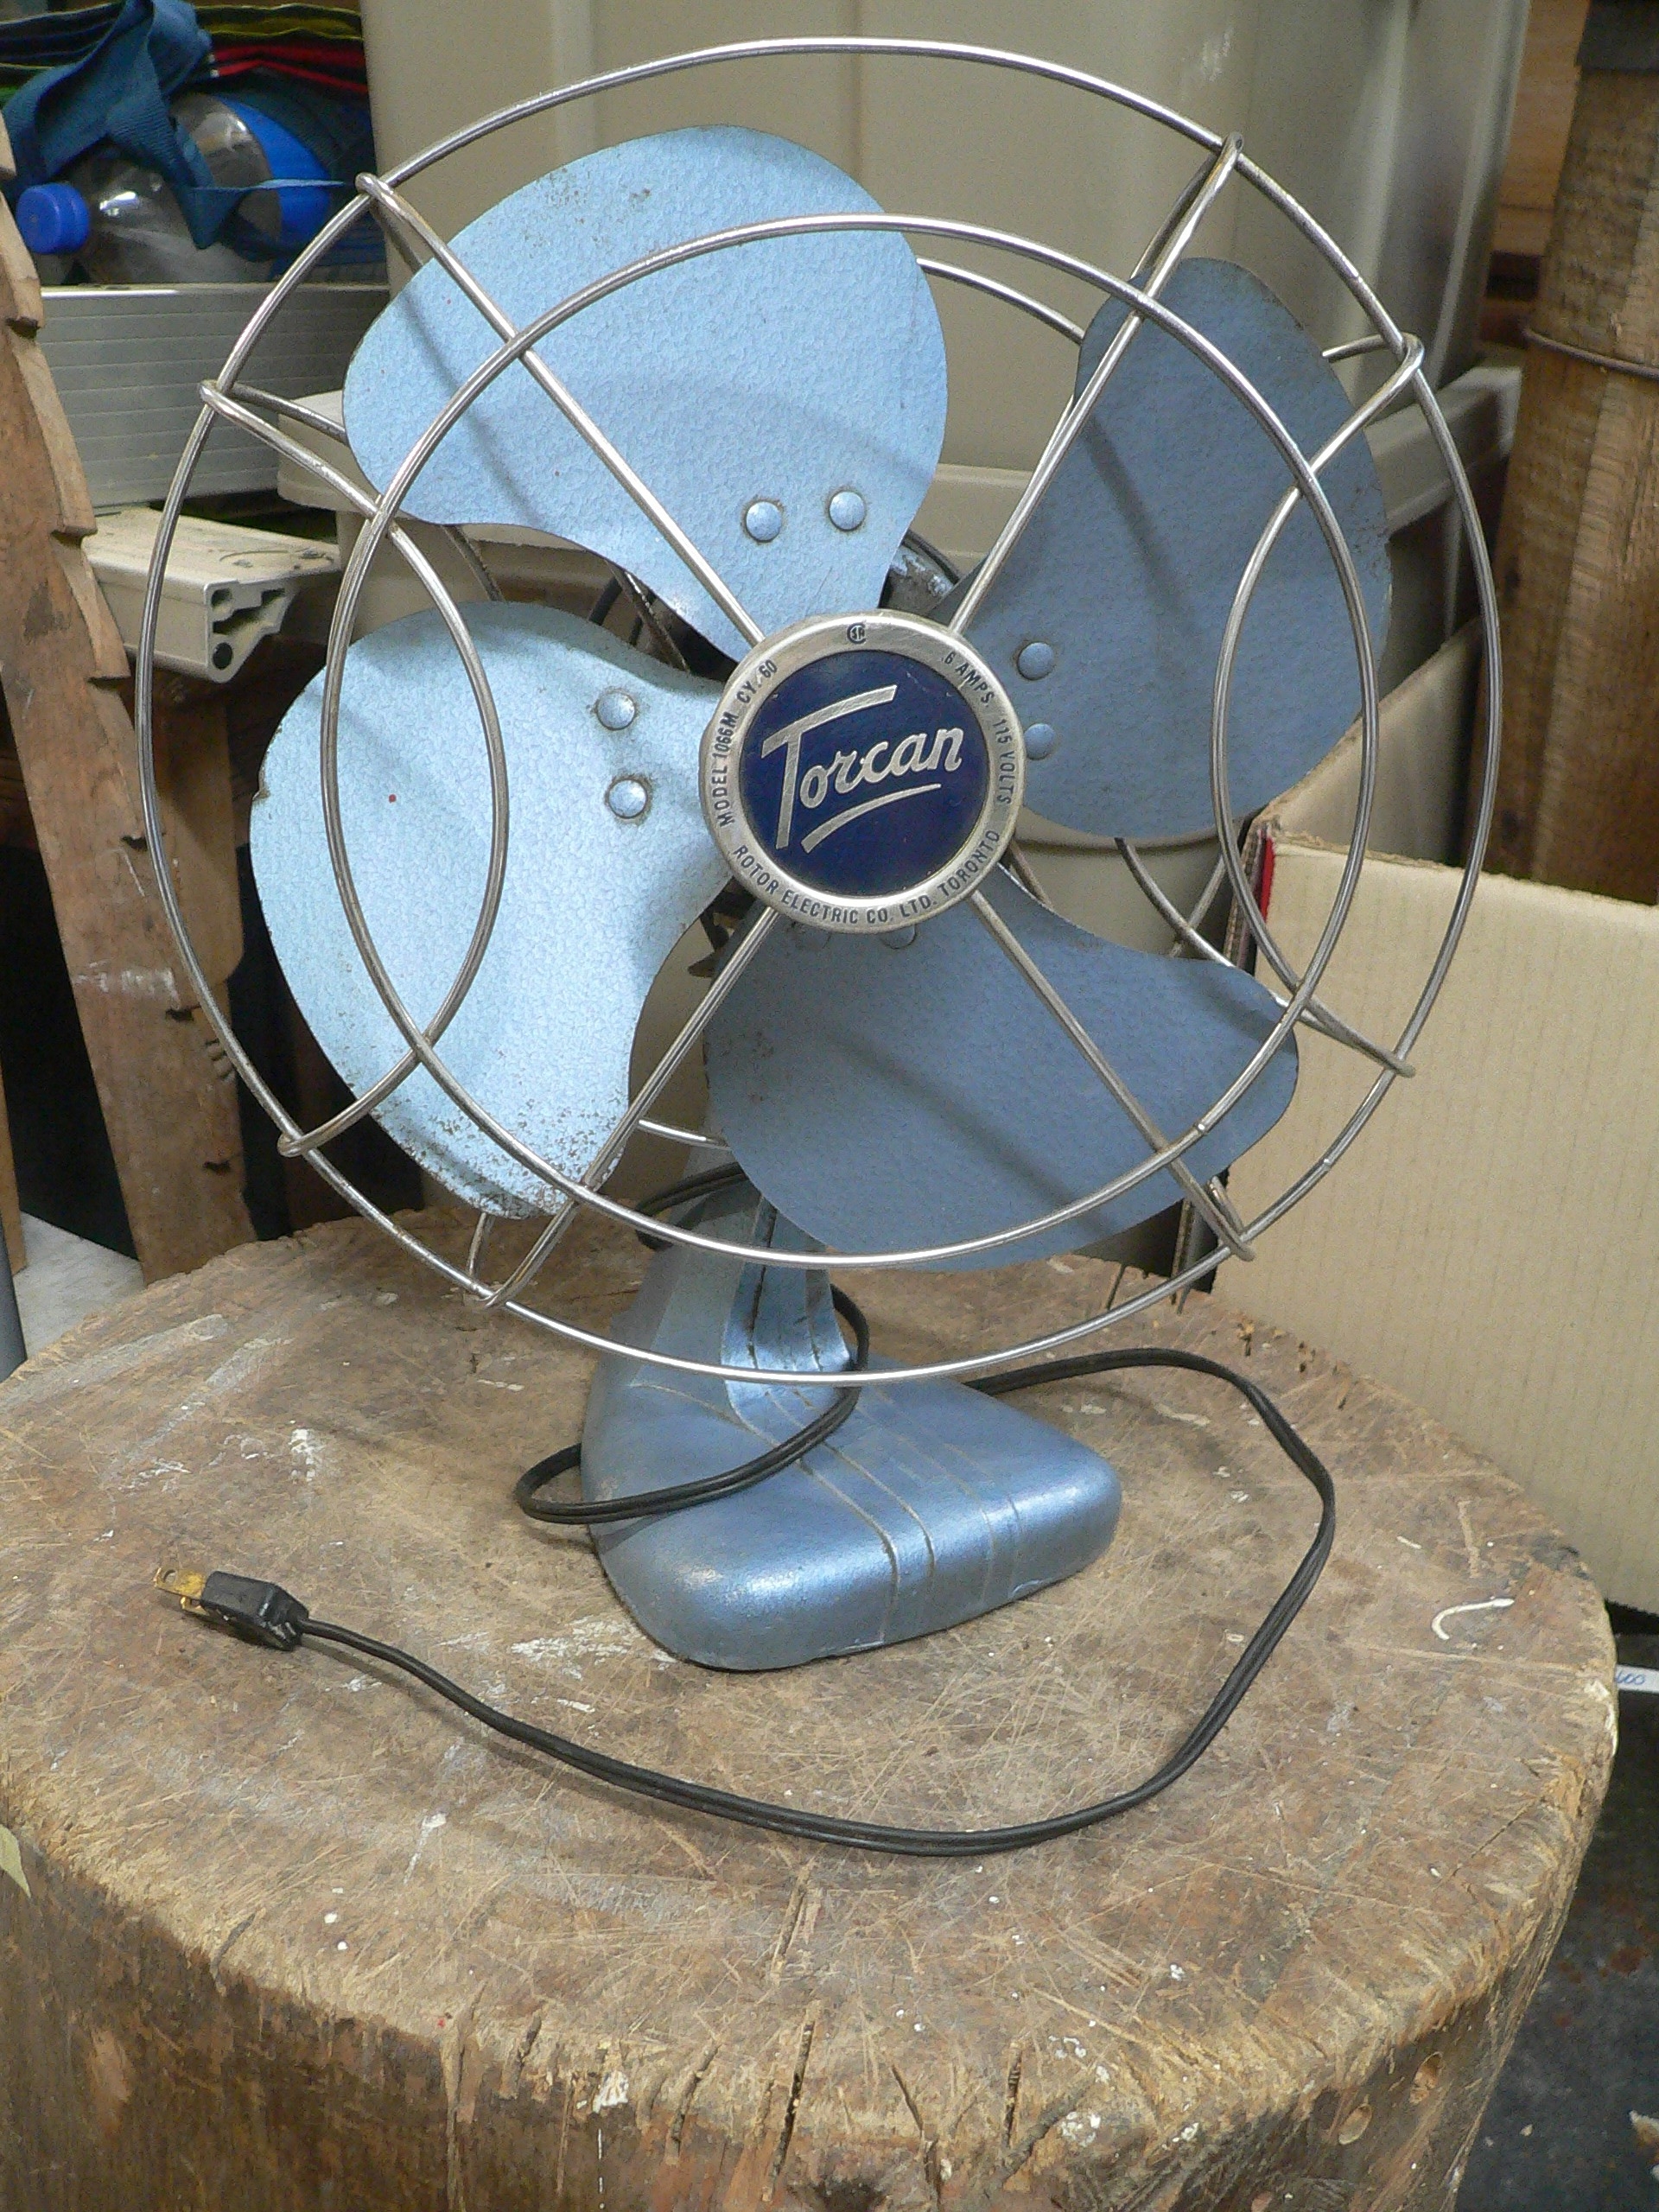 Ventilateur antique torcan # 7455 